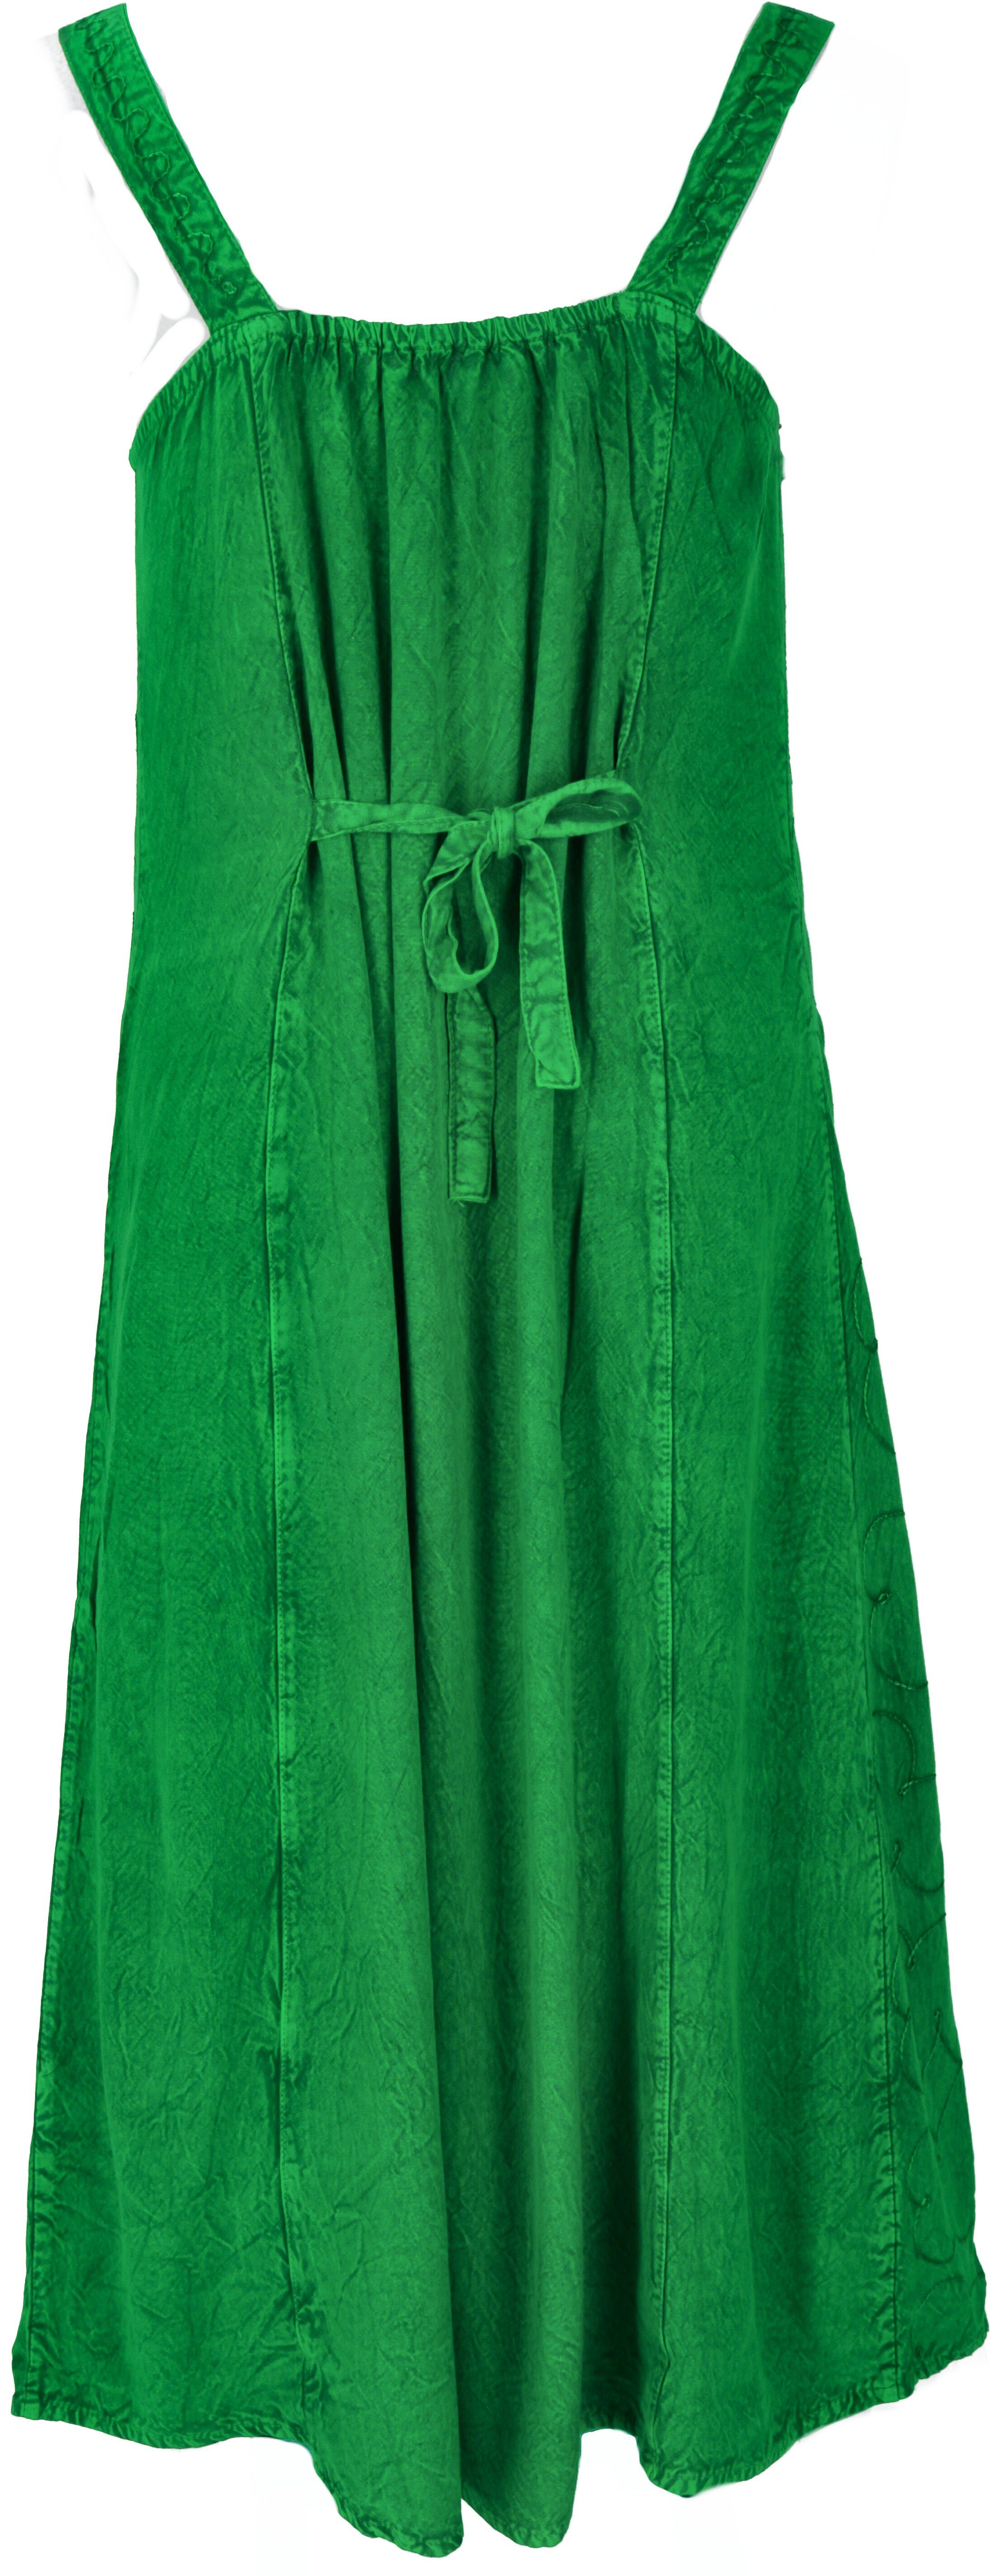 Midikleid Boho alternative Guru-Shop indisches Bekleidung grün - Sommerkleid chic Besticktes